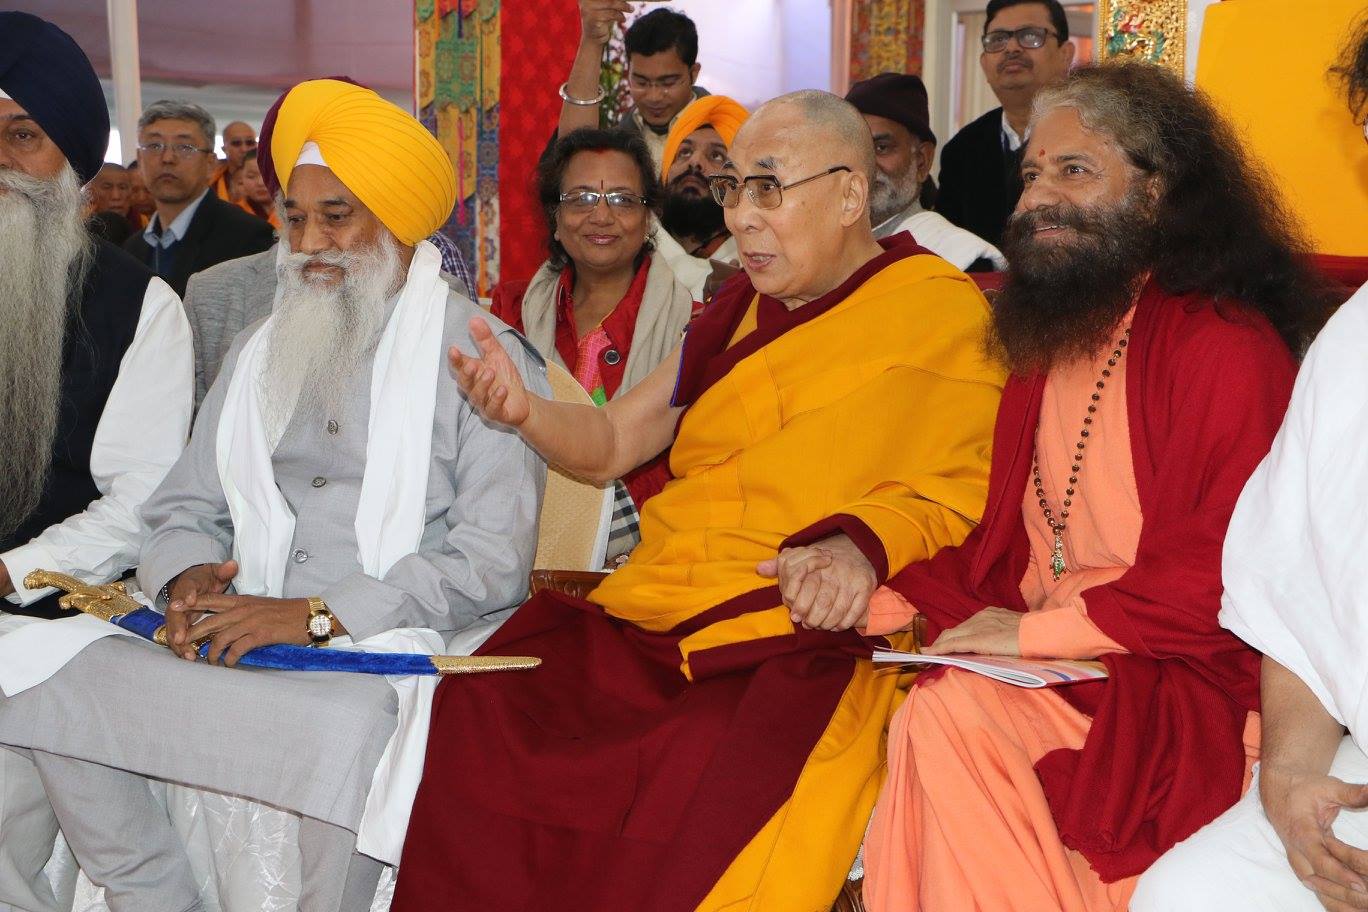 GIWA Faith leaders with dalai lamaji